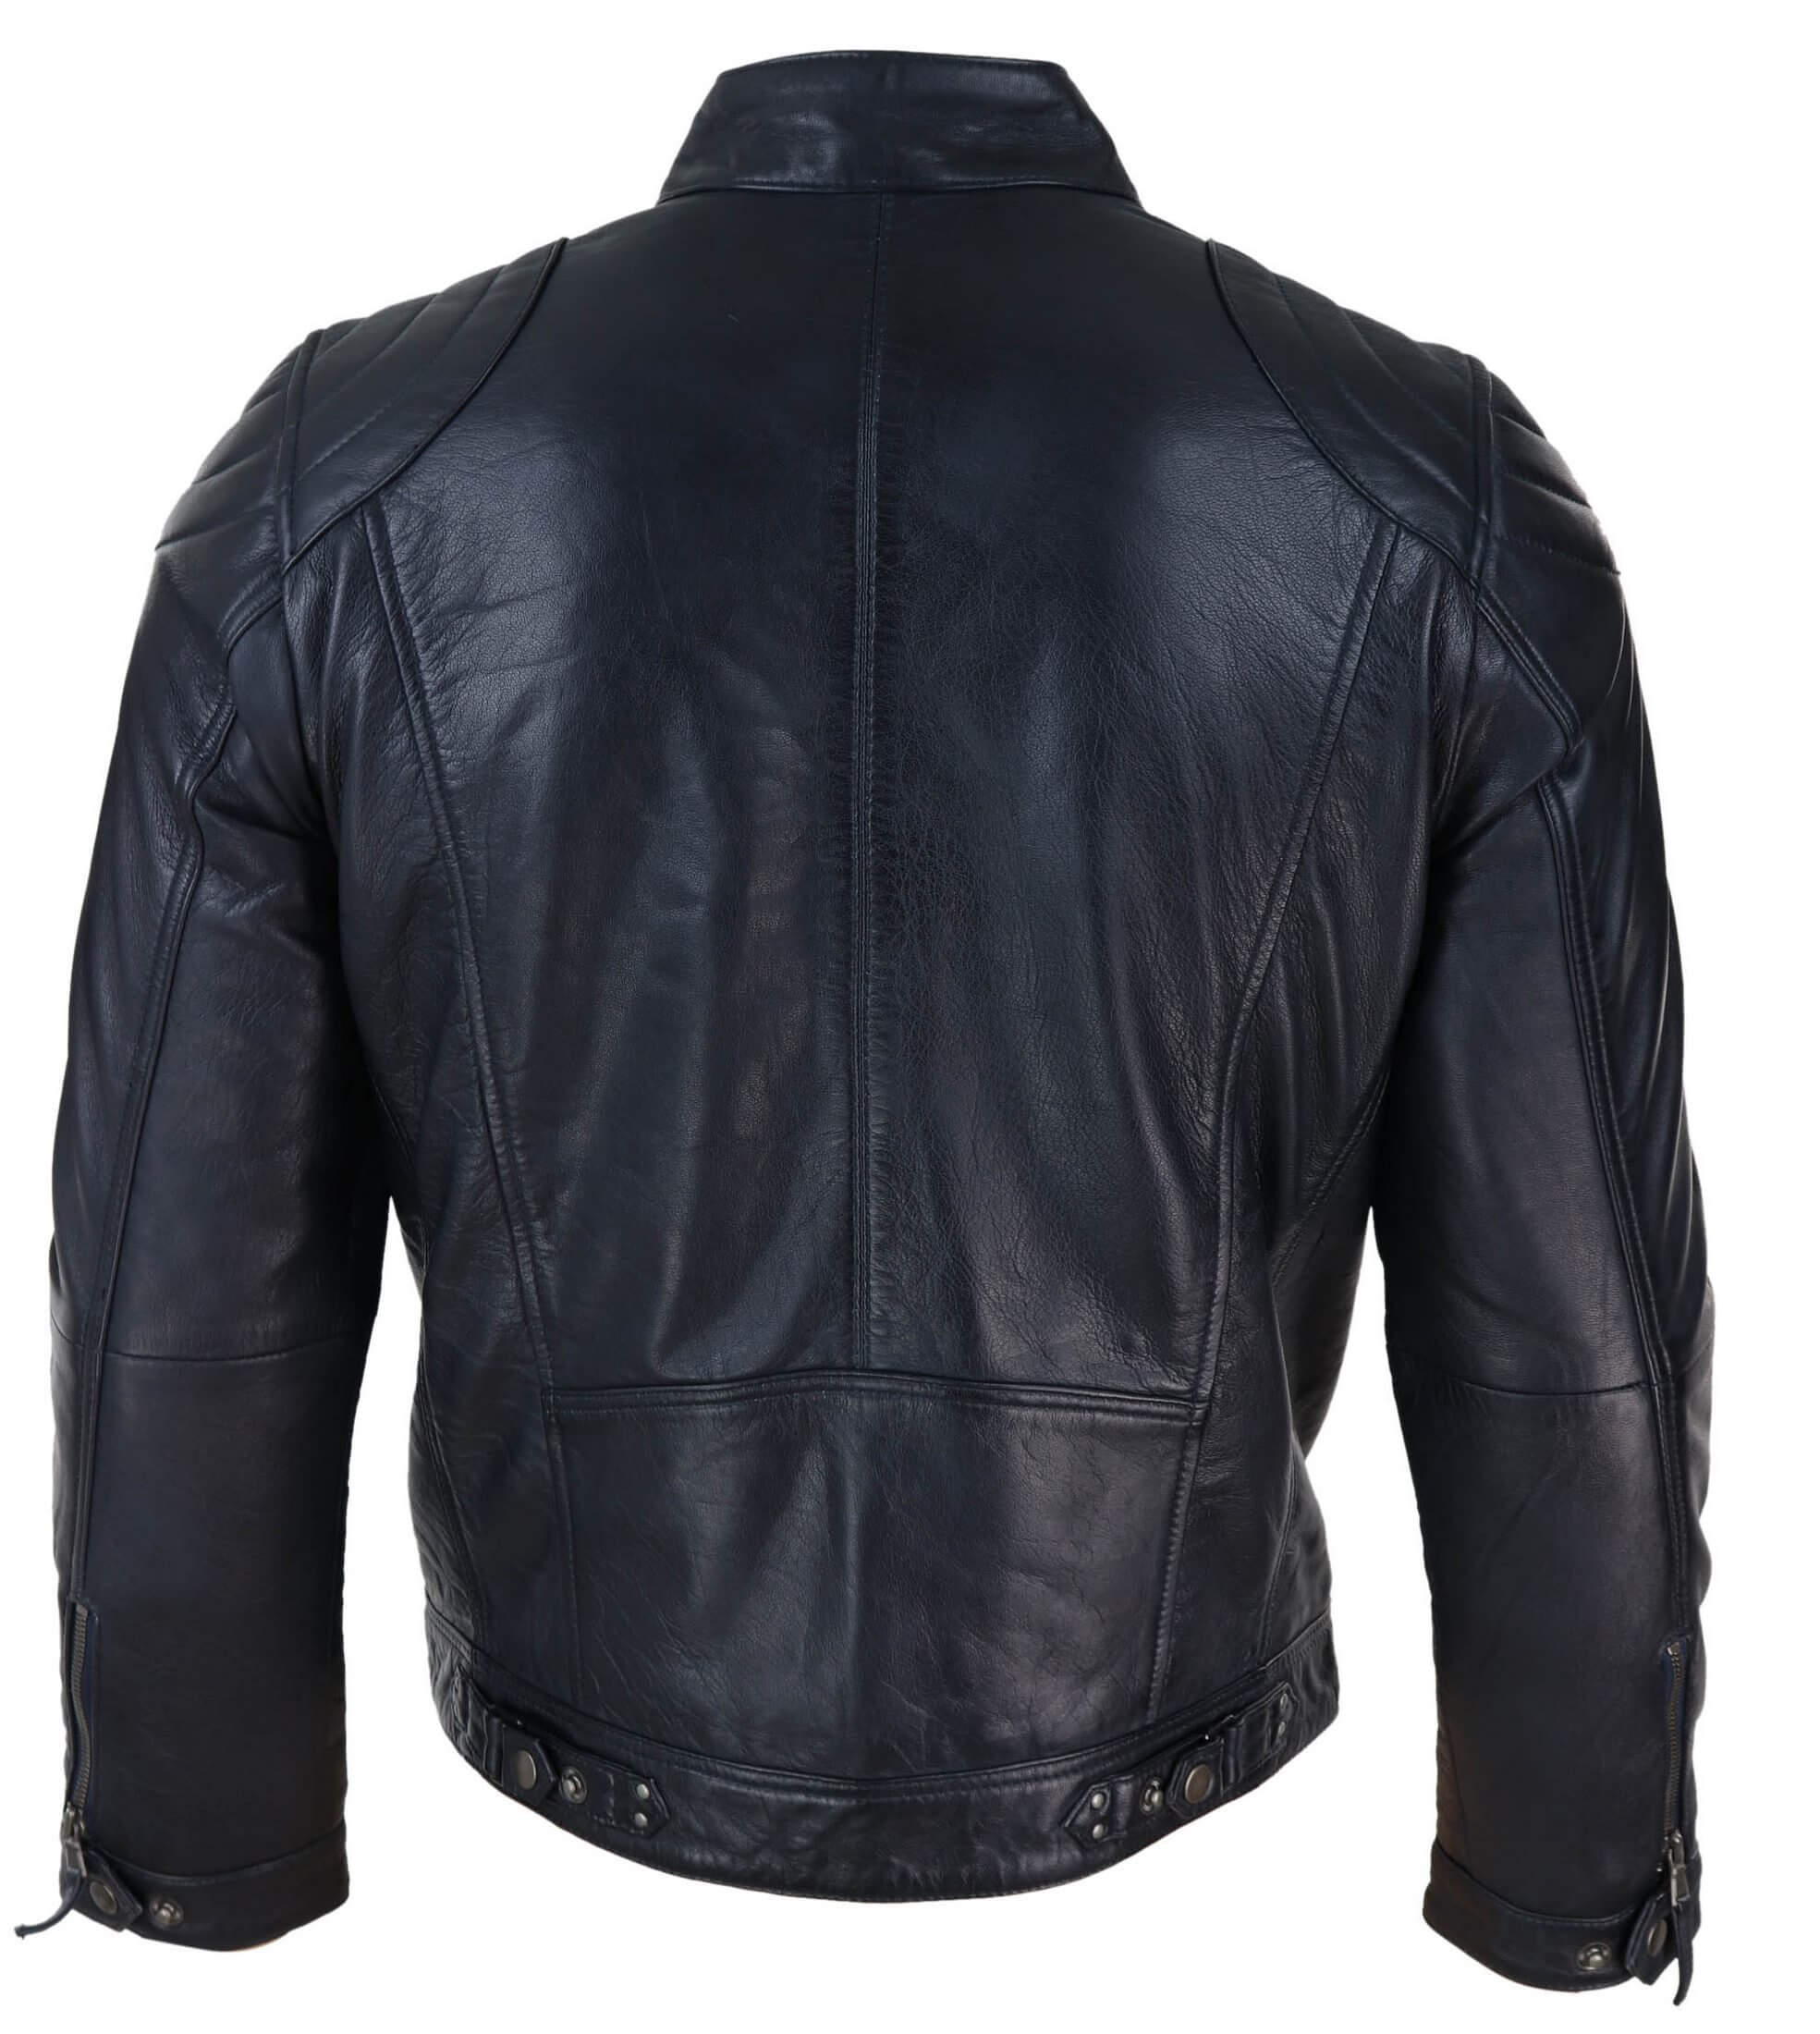 Genuine Leather Black Biker Jacket for Men: Buy Online - Happy Gentleman